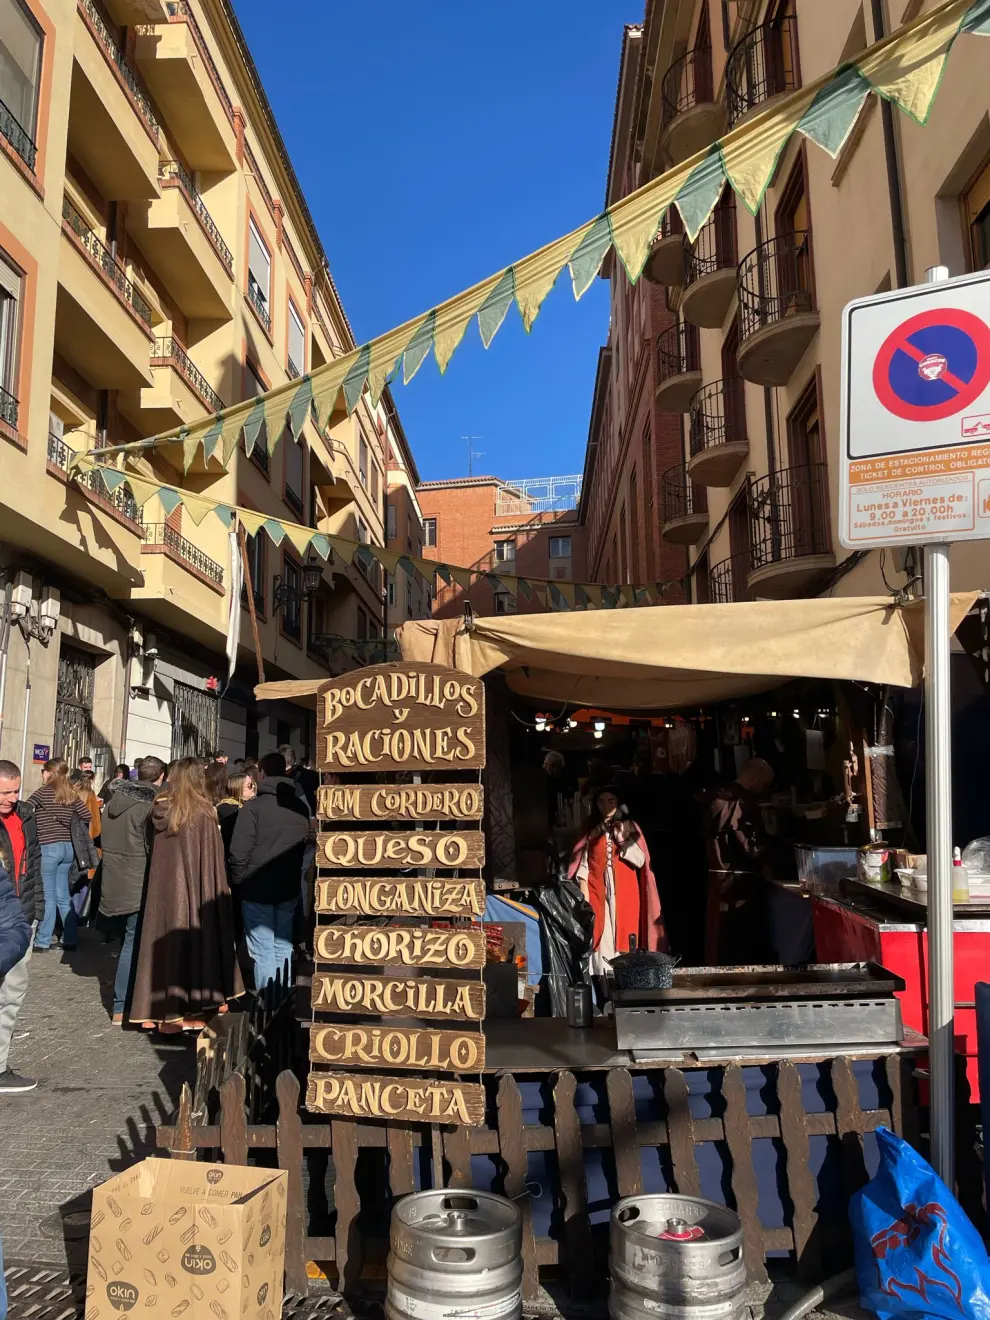 Cientos de personas han llenado las calles de Teruel de alegría y diversión.